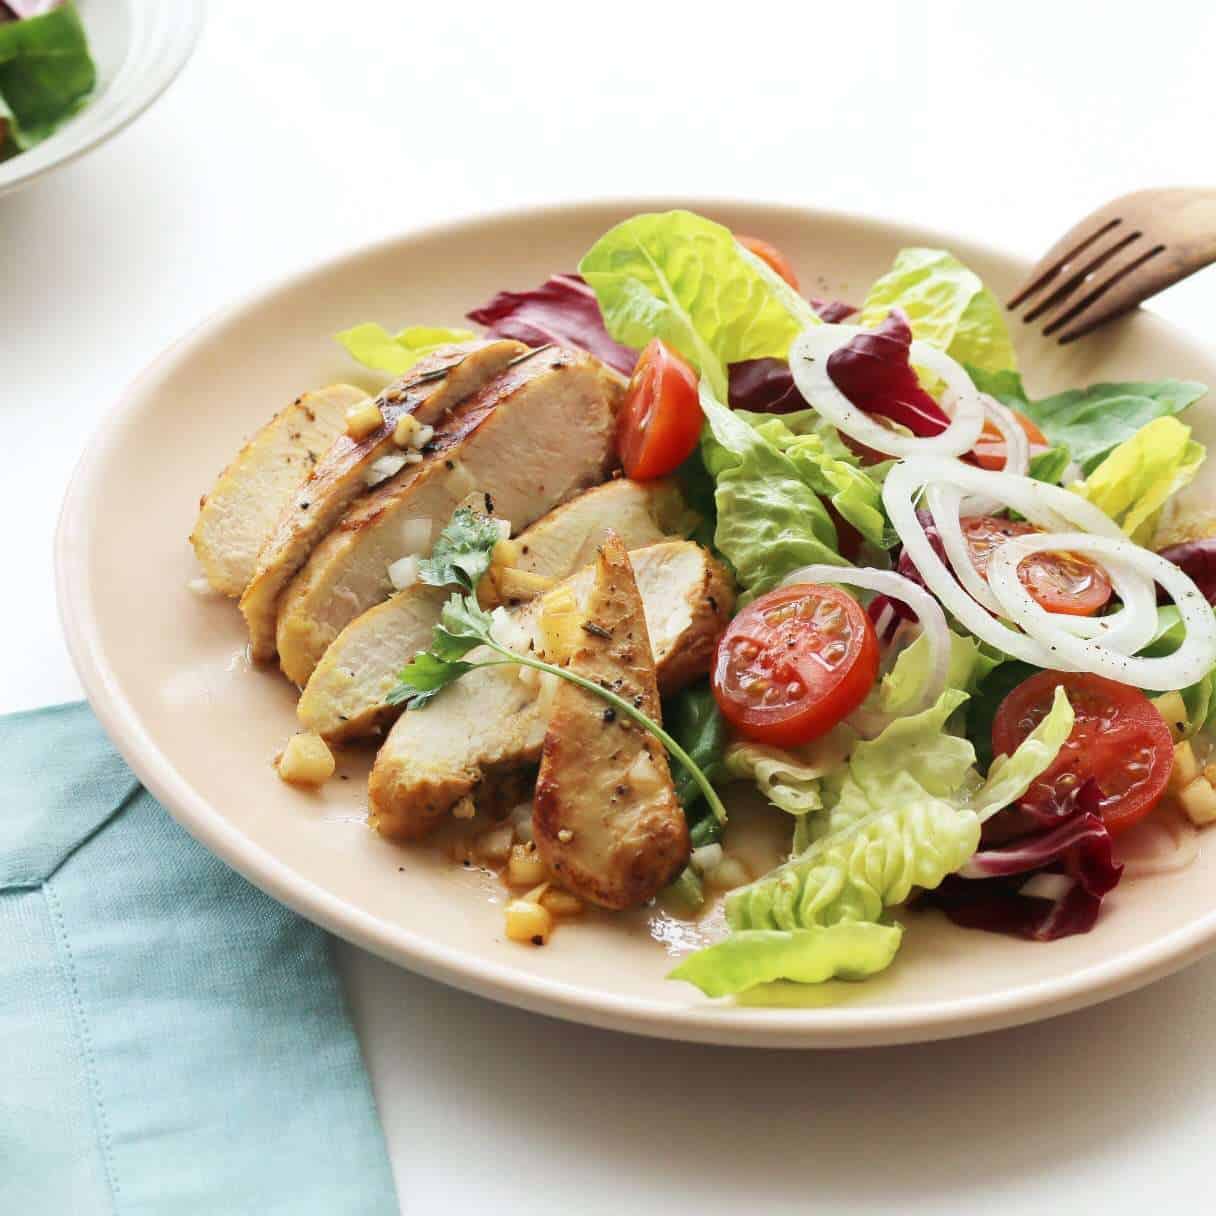 Salad ức gà nướng giảm cân